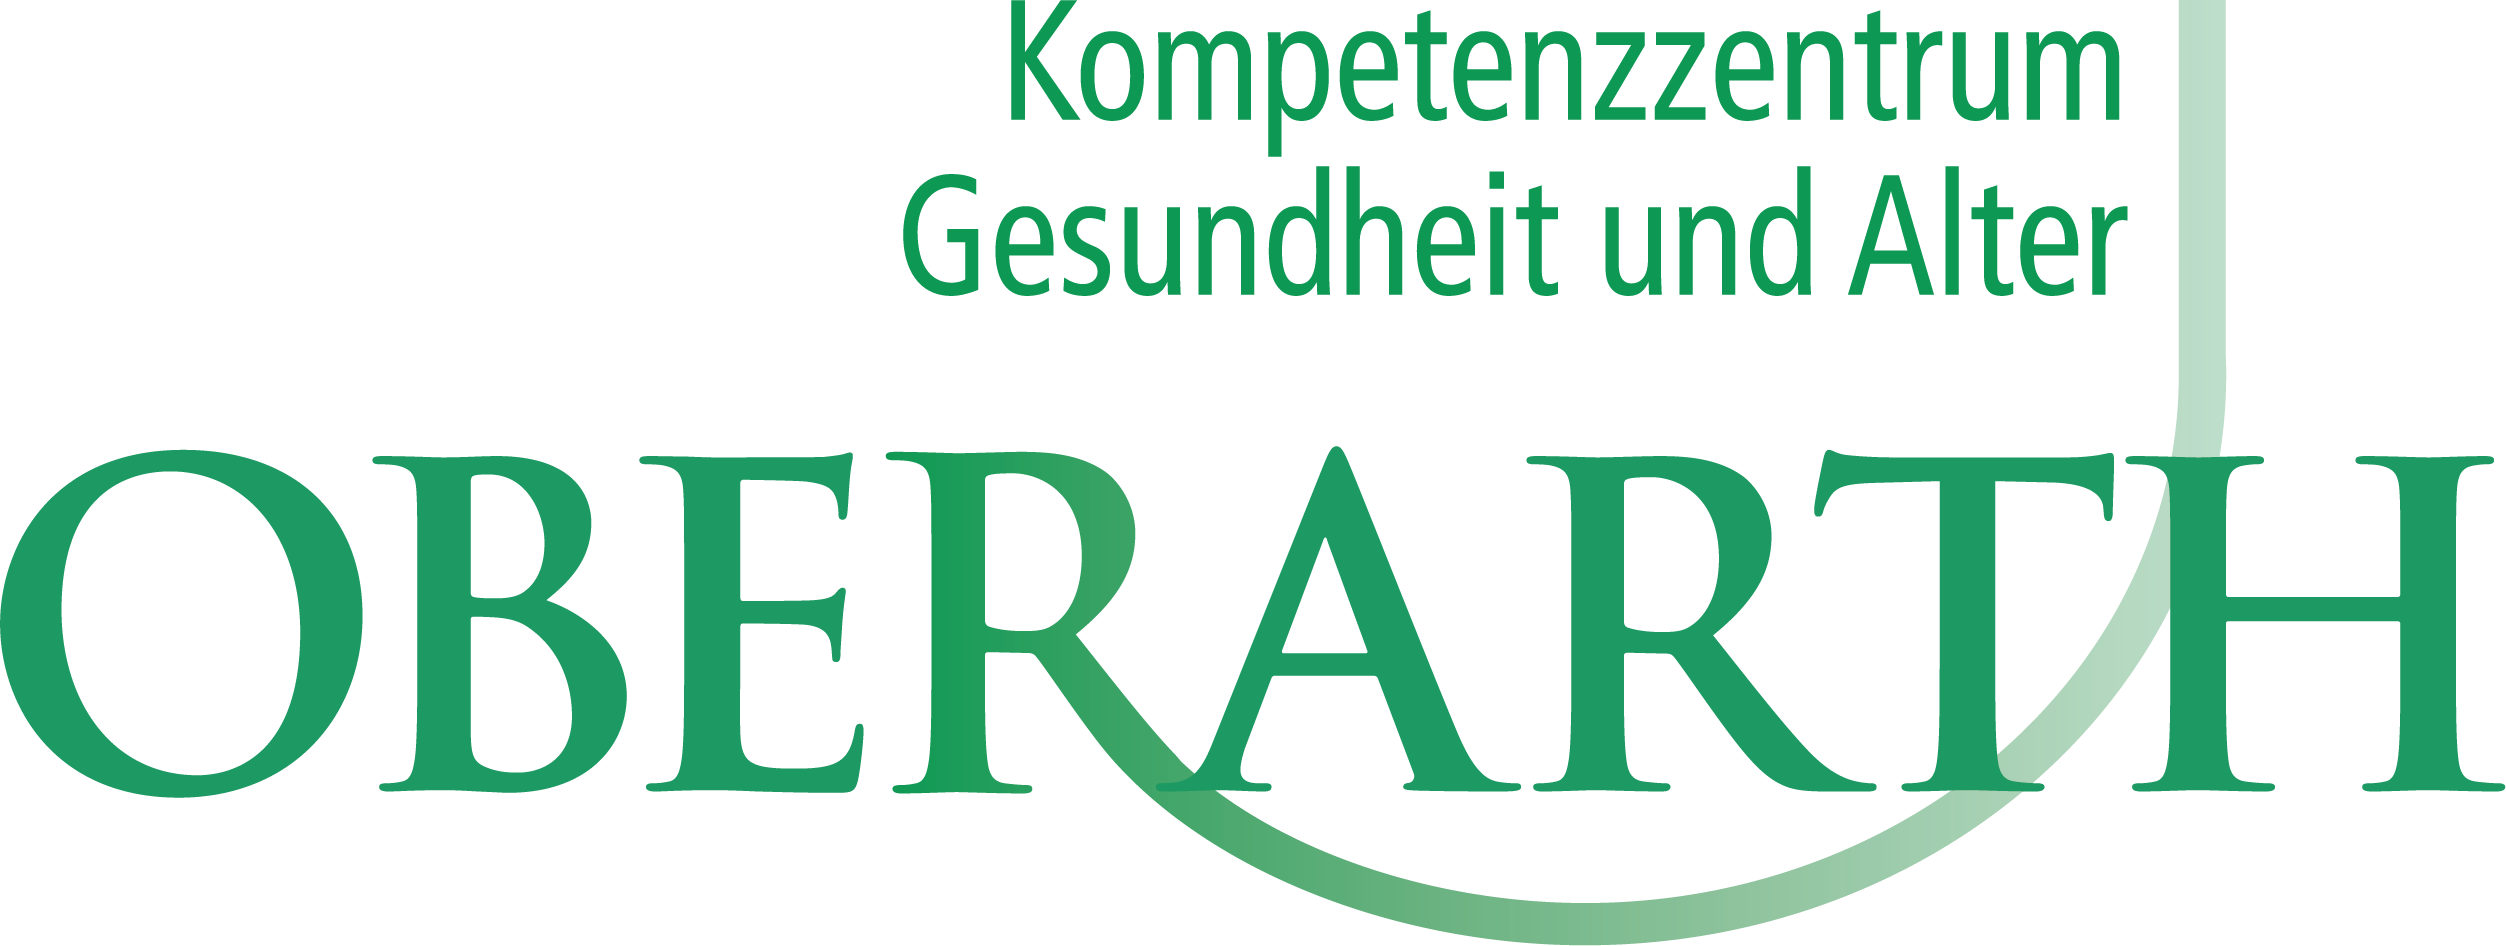 Logo-Kompetenzzentrum_Arth